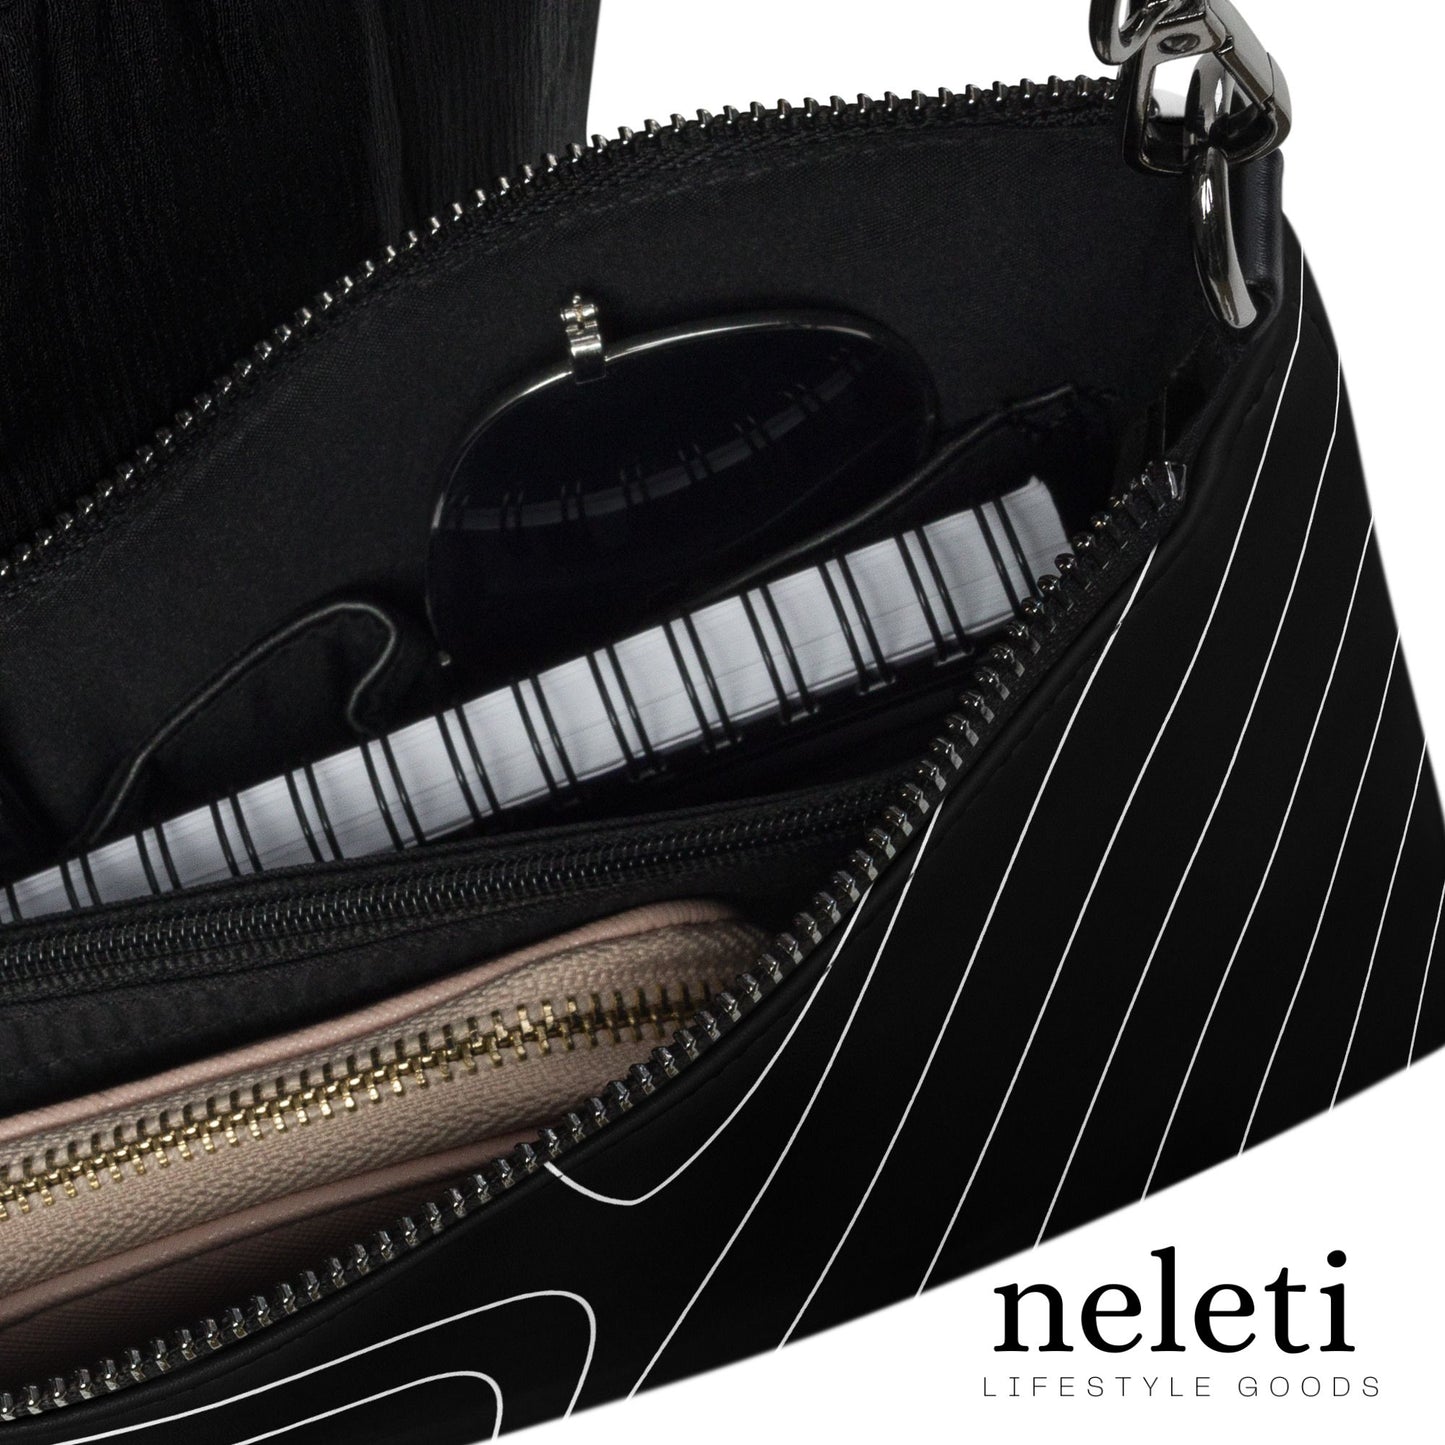 neleti.com-black-crossbody-bag-for-women